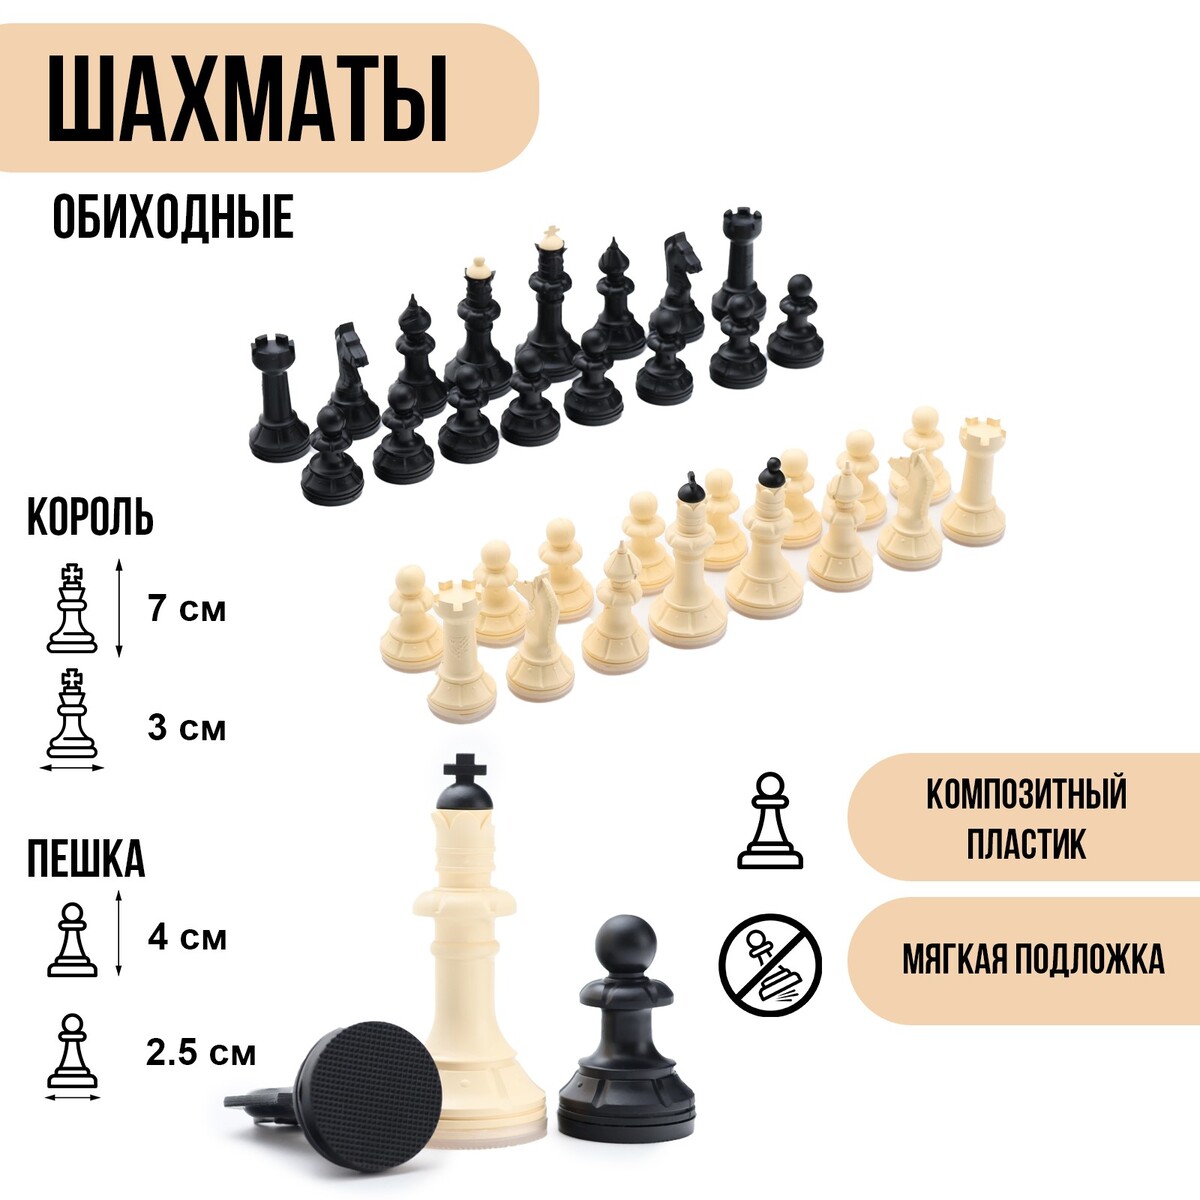 Шахматные фигуры обиходные, король h=7 см, пешка-4 см, пластик No brand